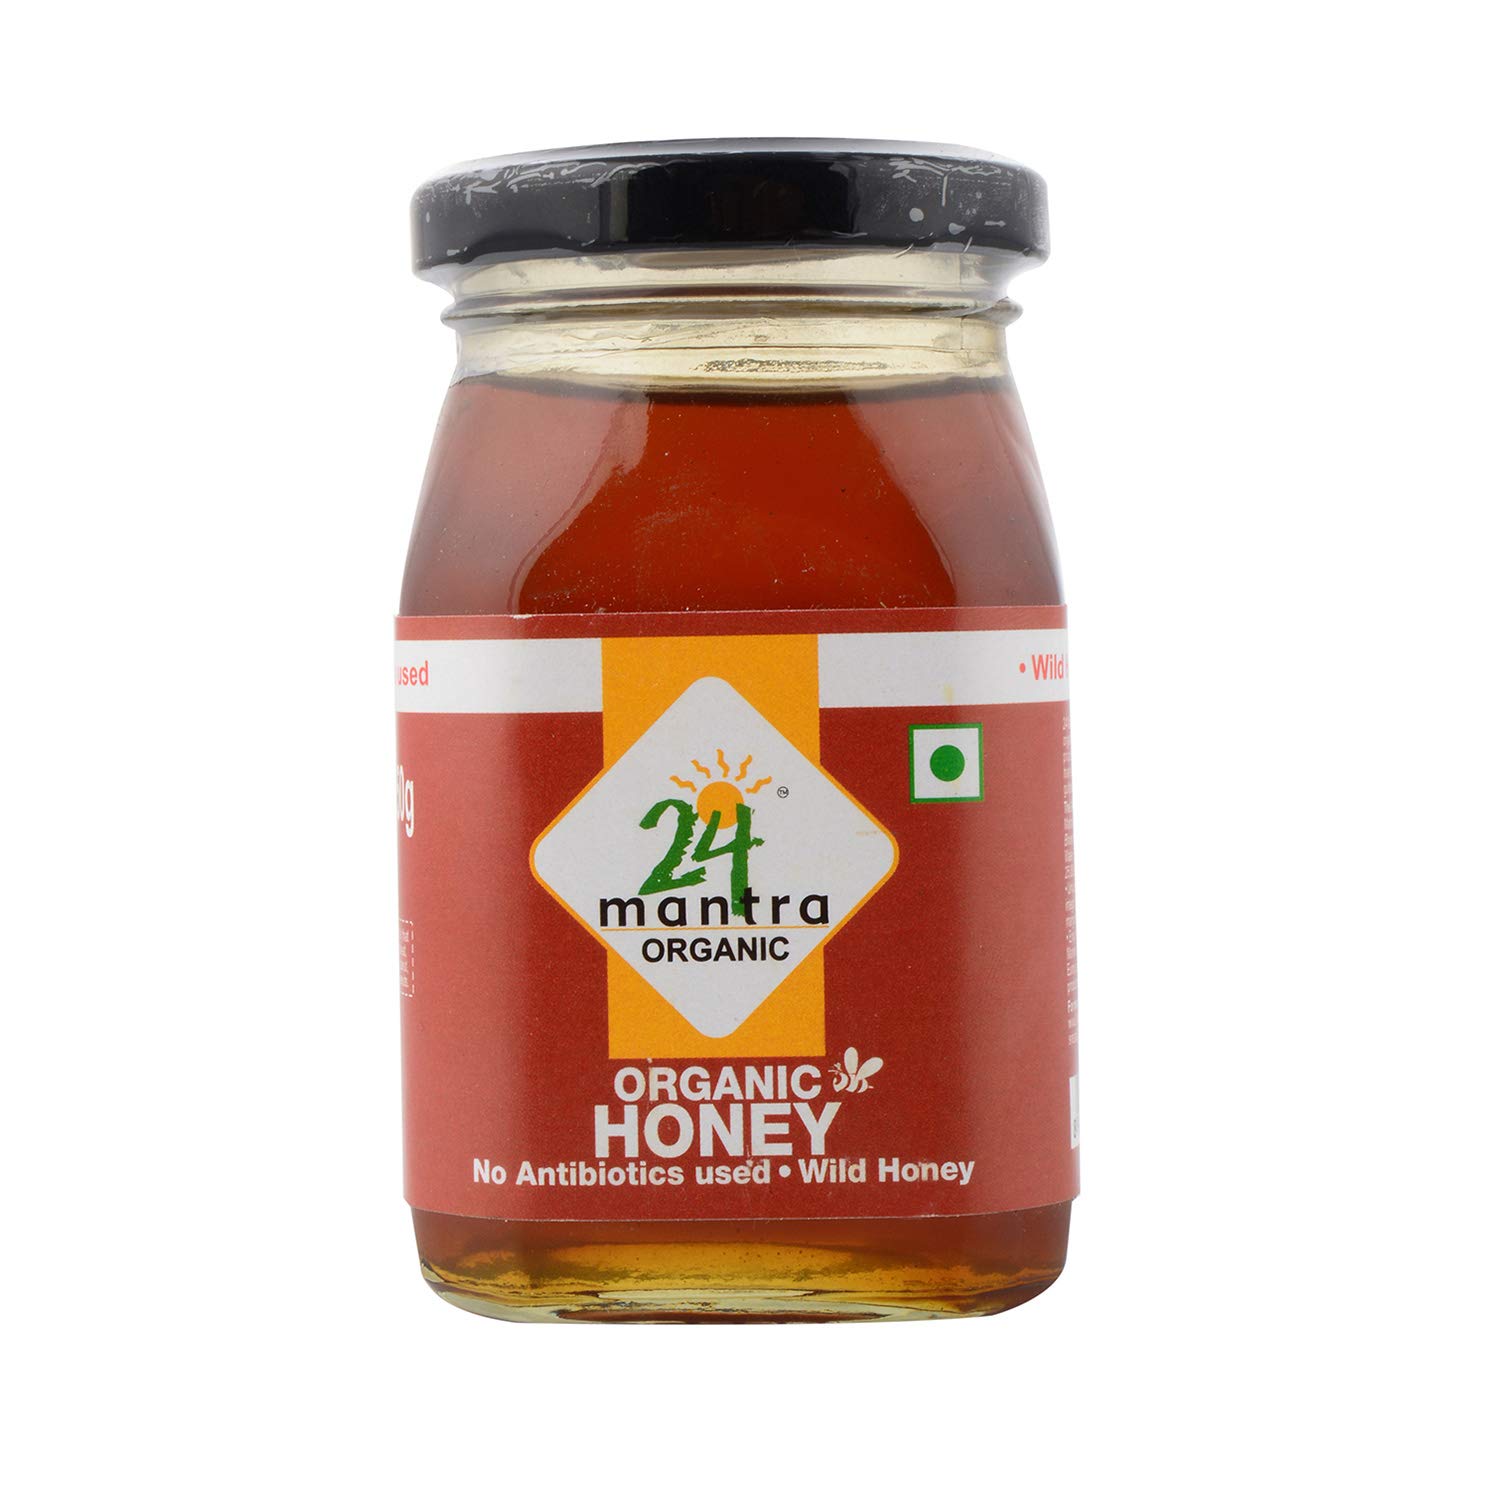 24 mantra honey